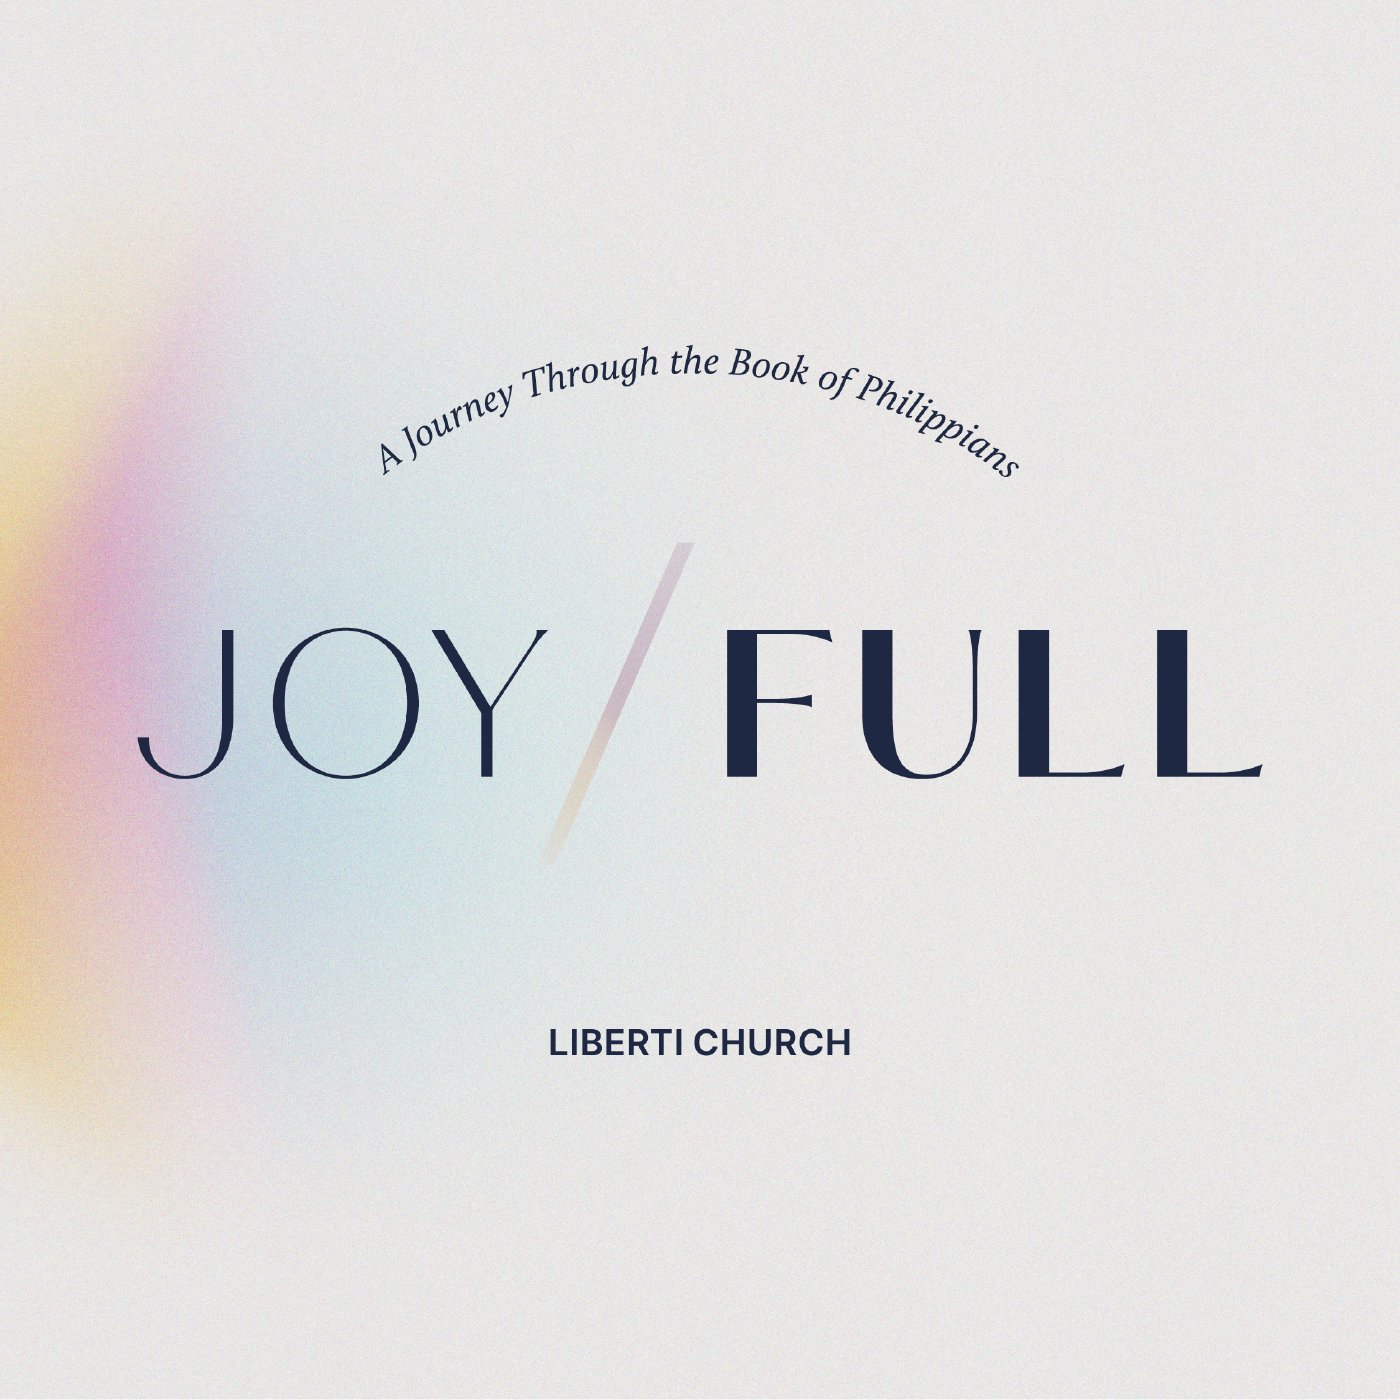 Joy/Full - Shining as Lights in the World - Week 6